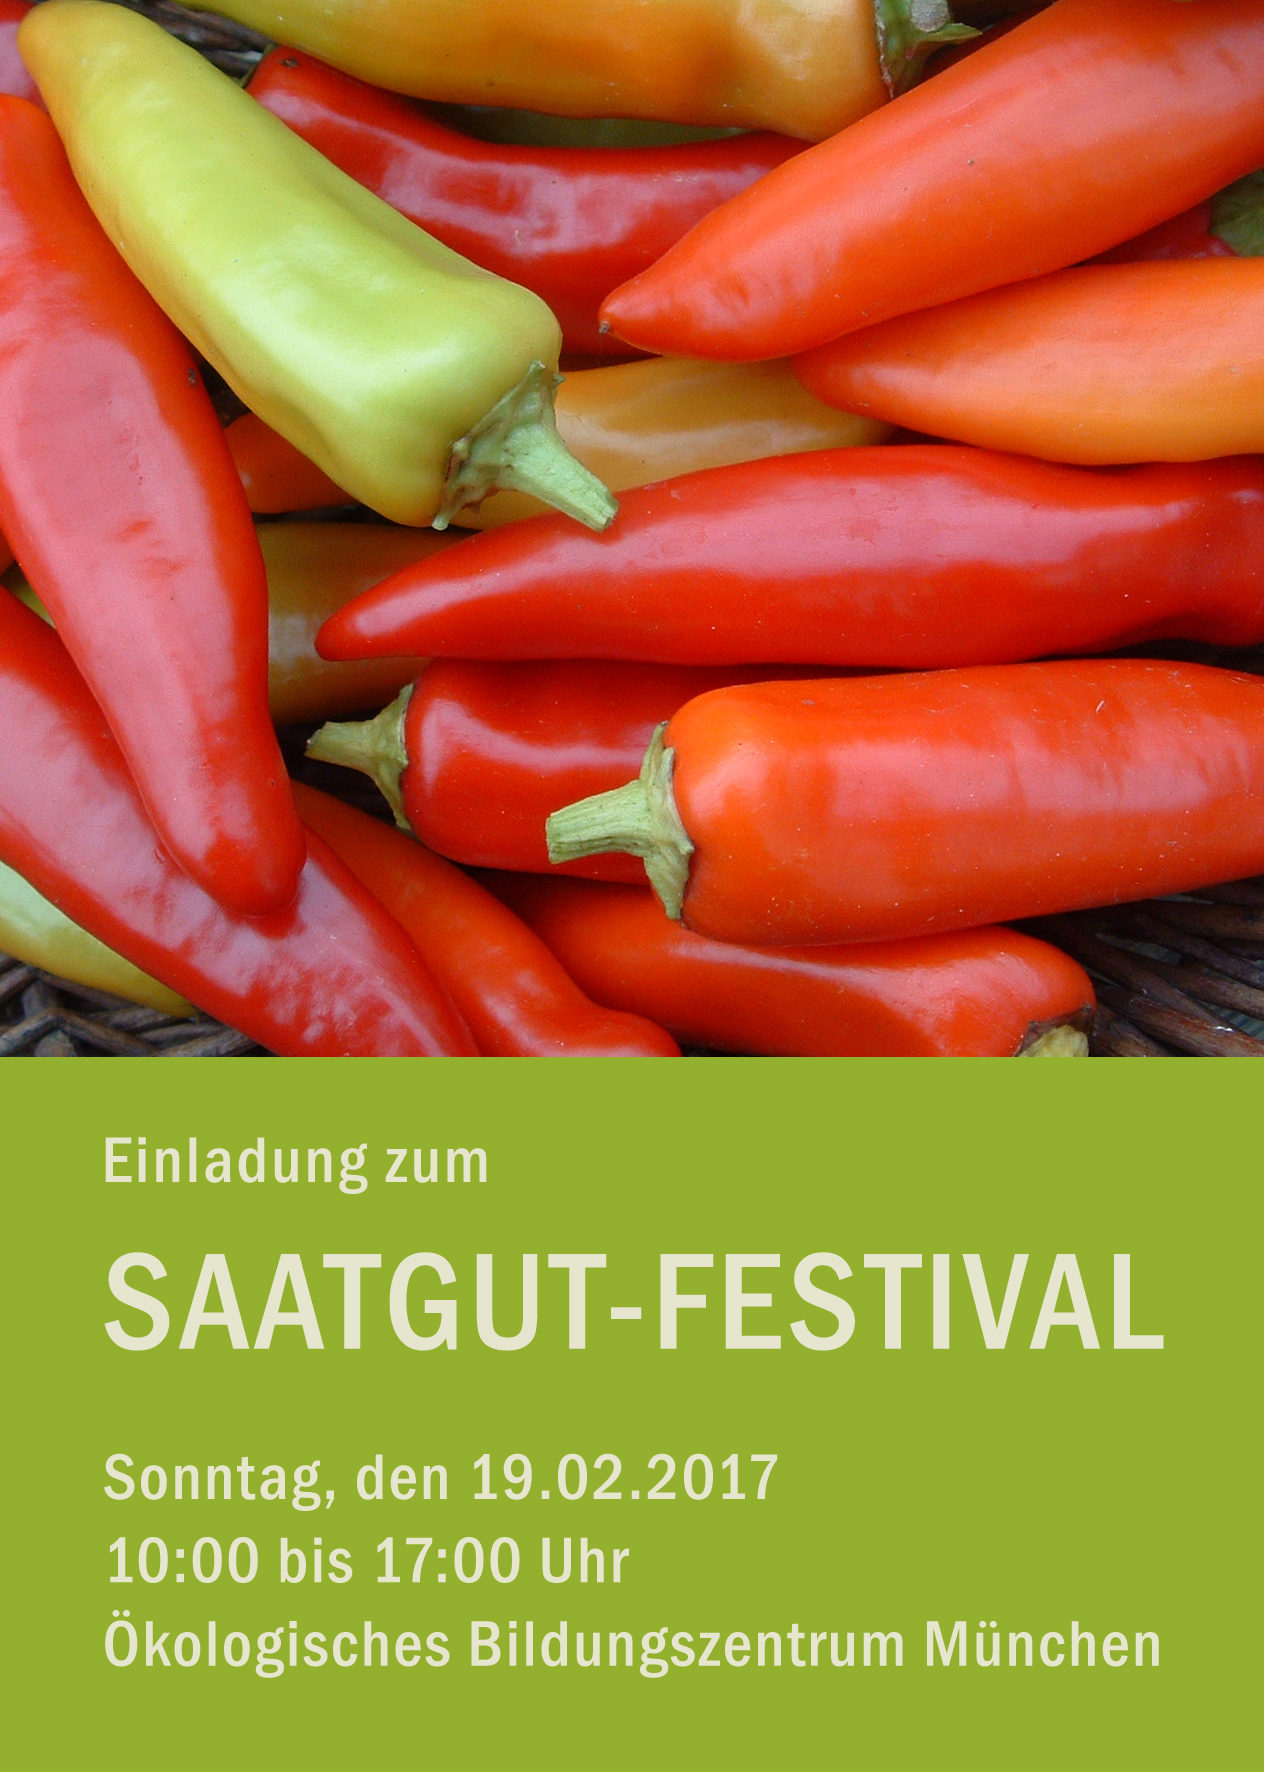 Saatgut-Festival 2017